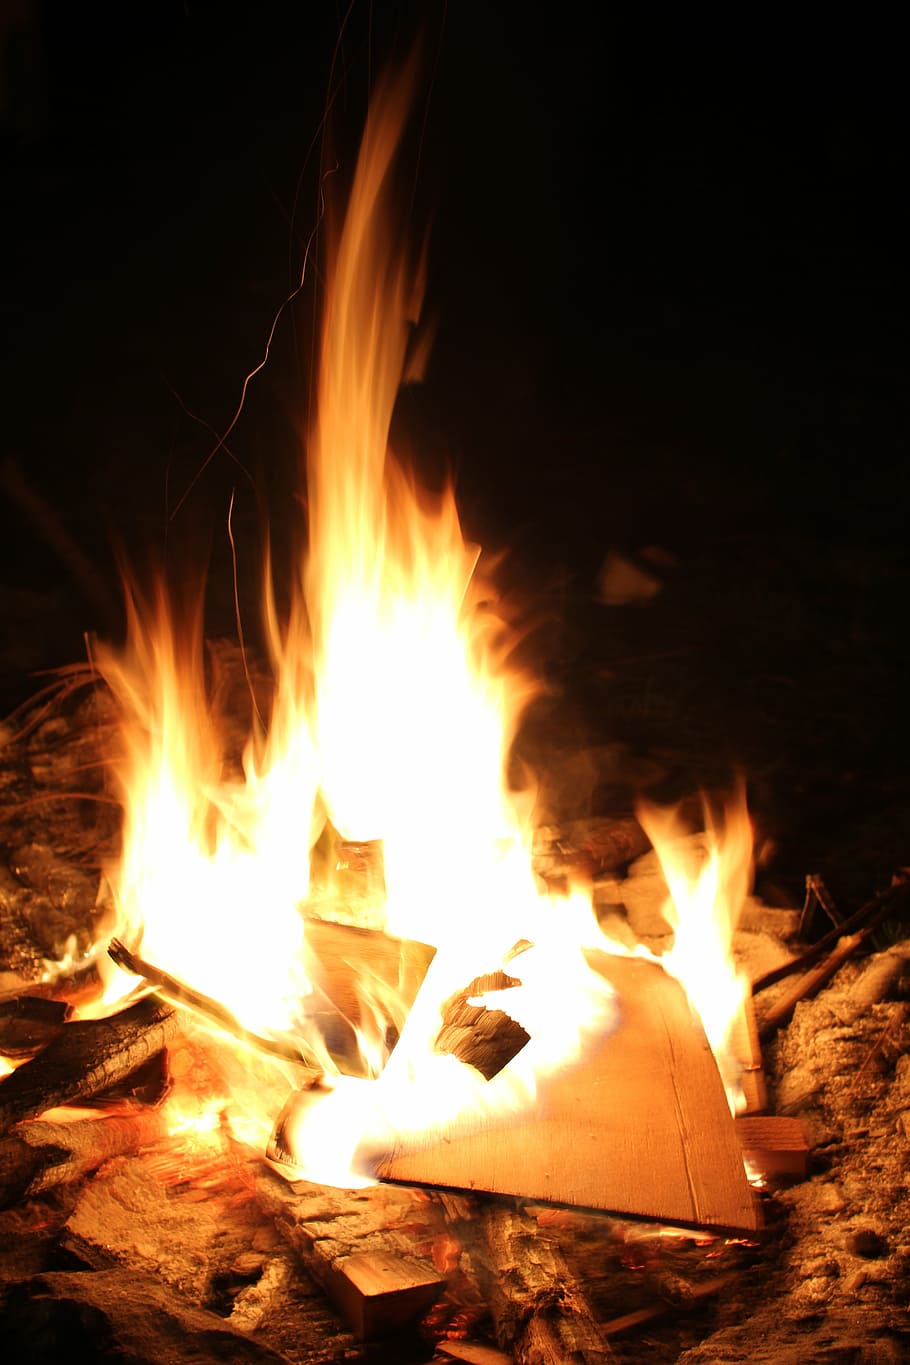 api unggun di malam hari, api, kayu, camp, outdoor, memasak, percikan, hijau, rumput, daun